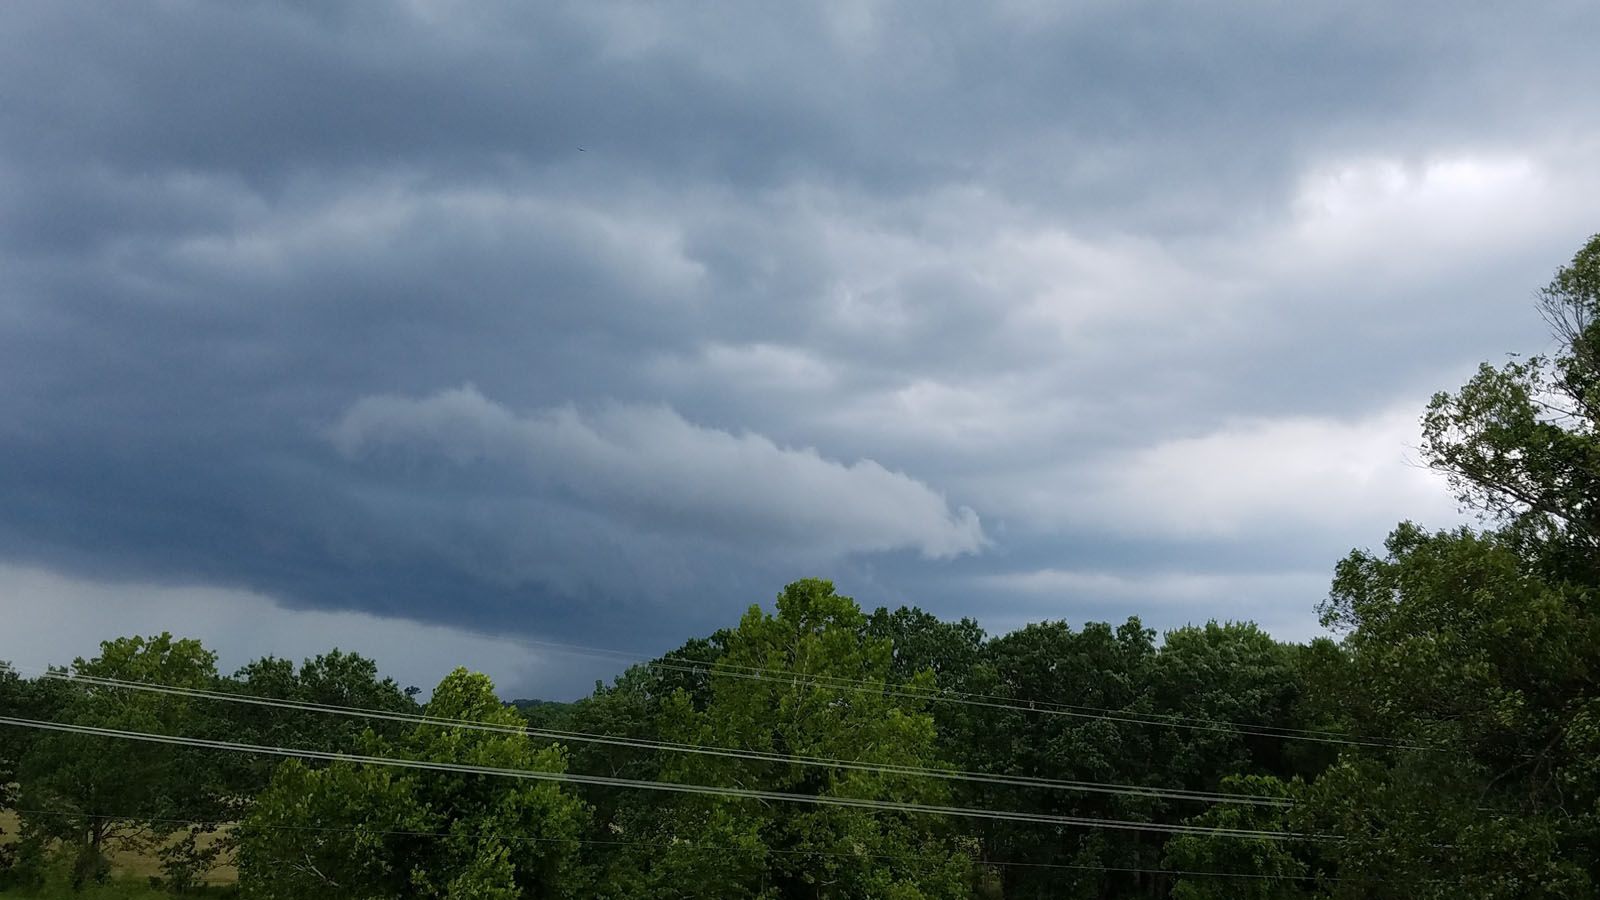 Storm over Warrenton, Virginia. (Courtesy Eduardo Villavicencio)